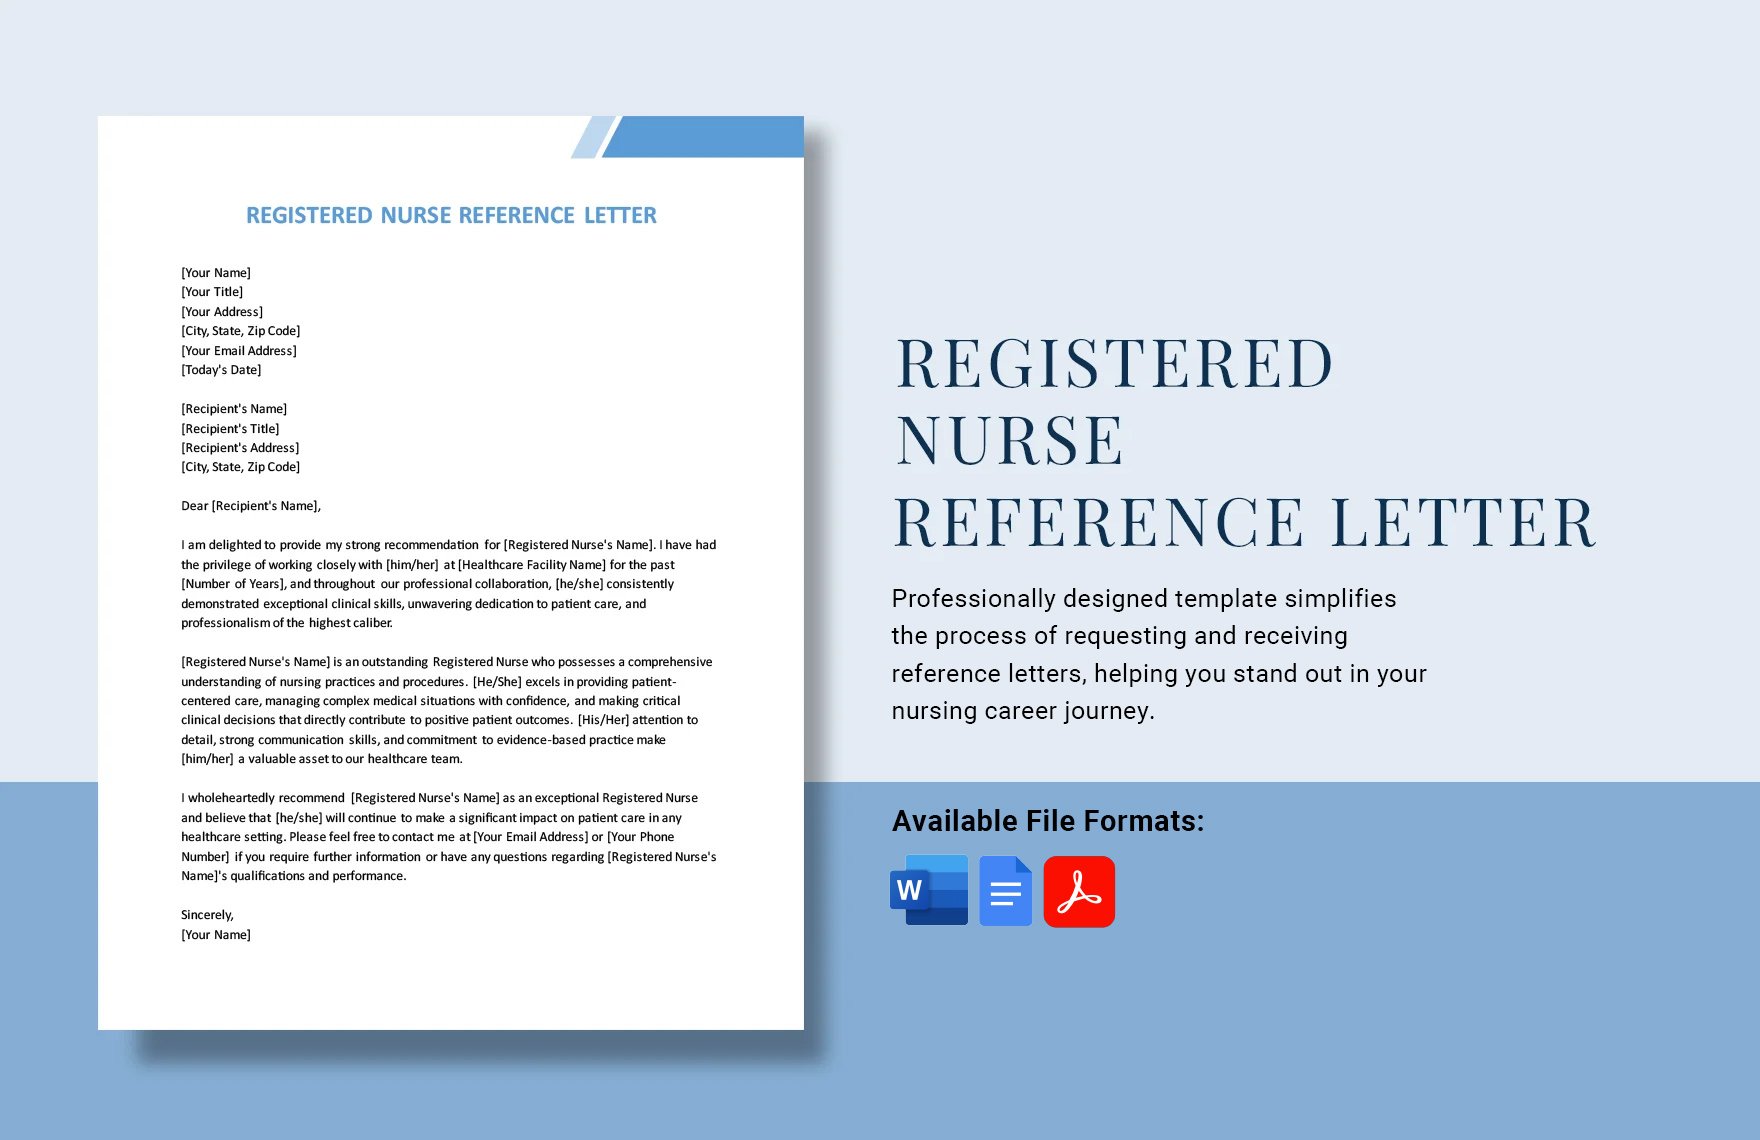 Registered Nurse Reference Letter in Word, Google Docs, PDF